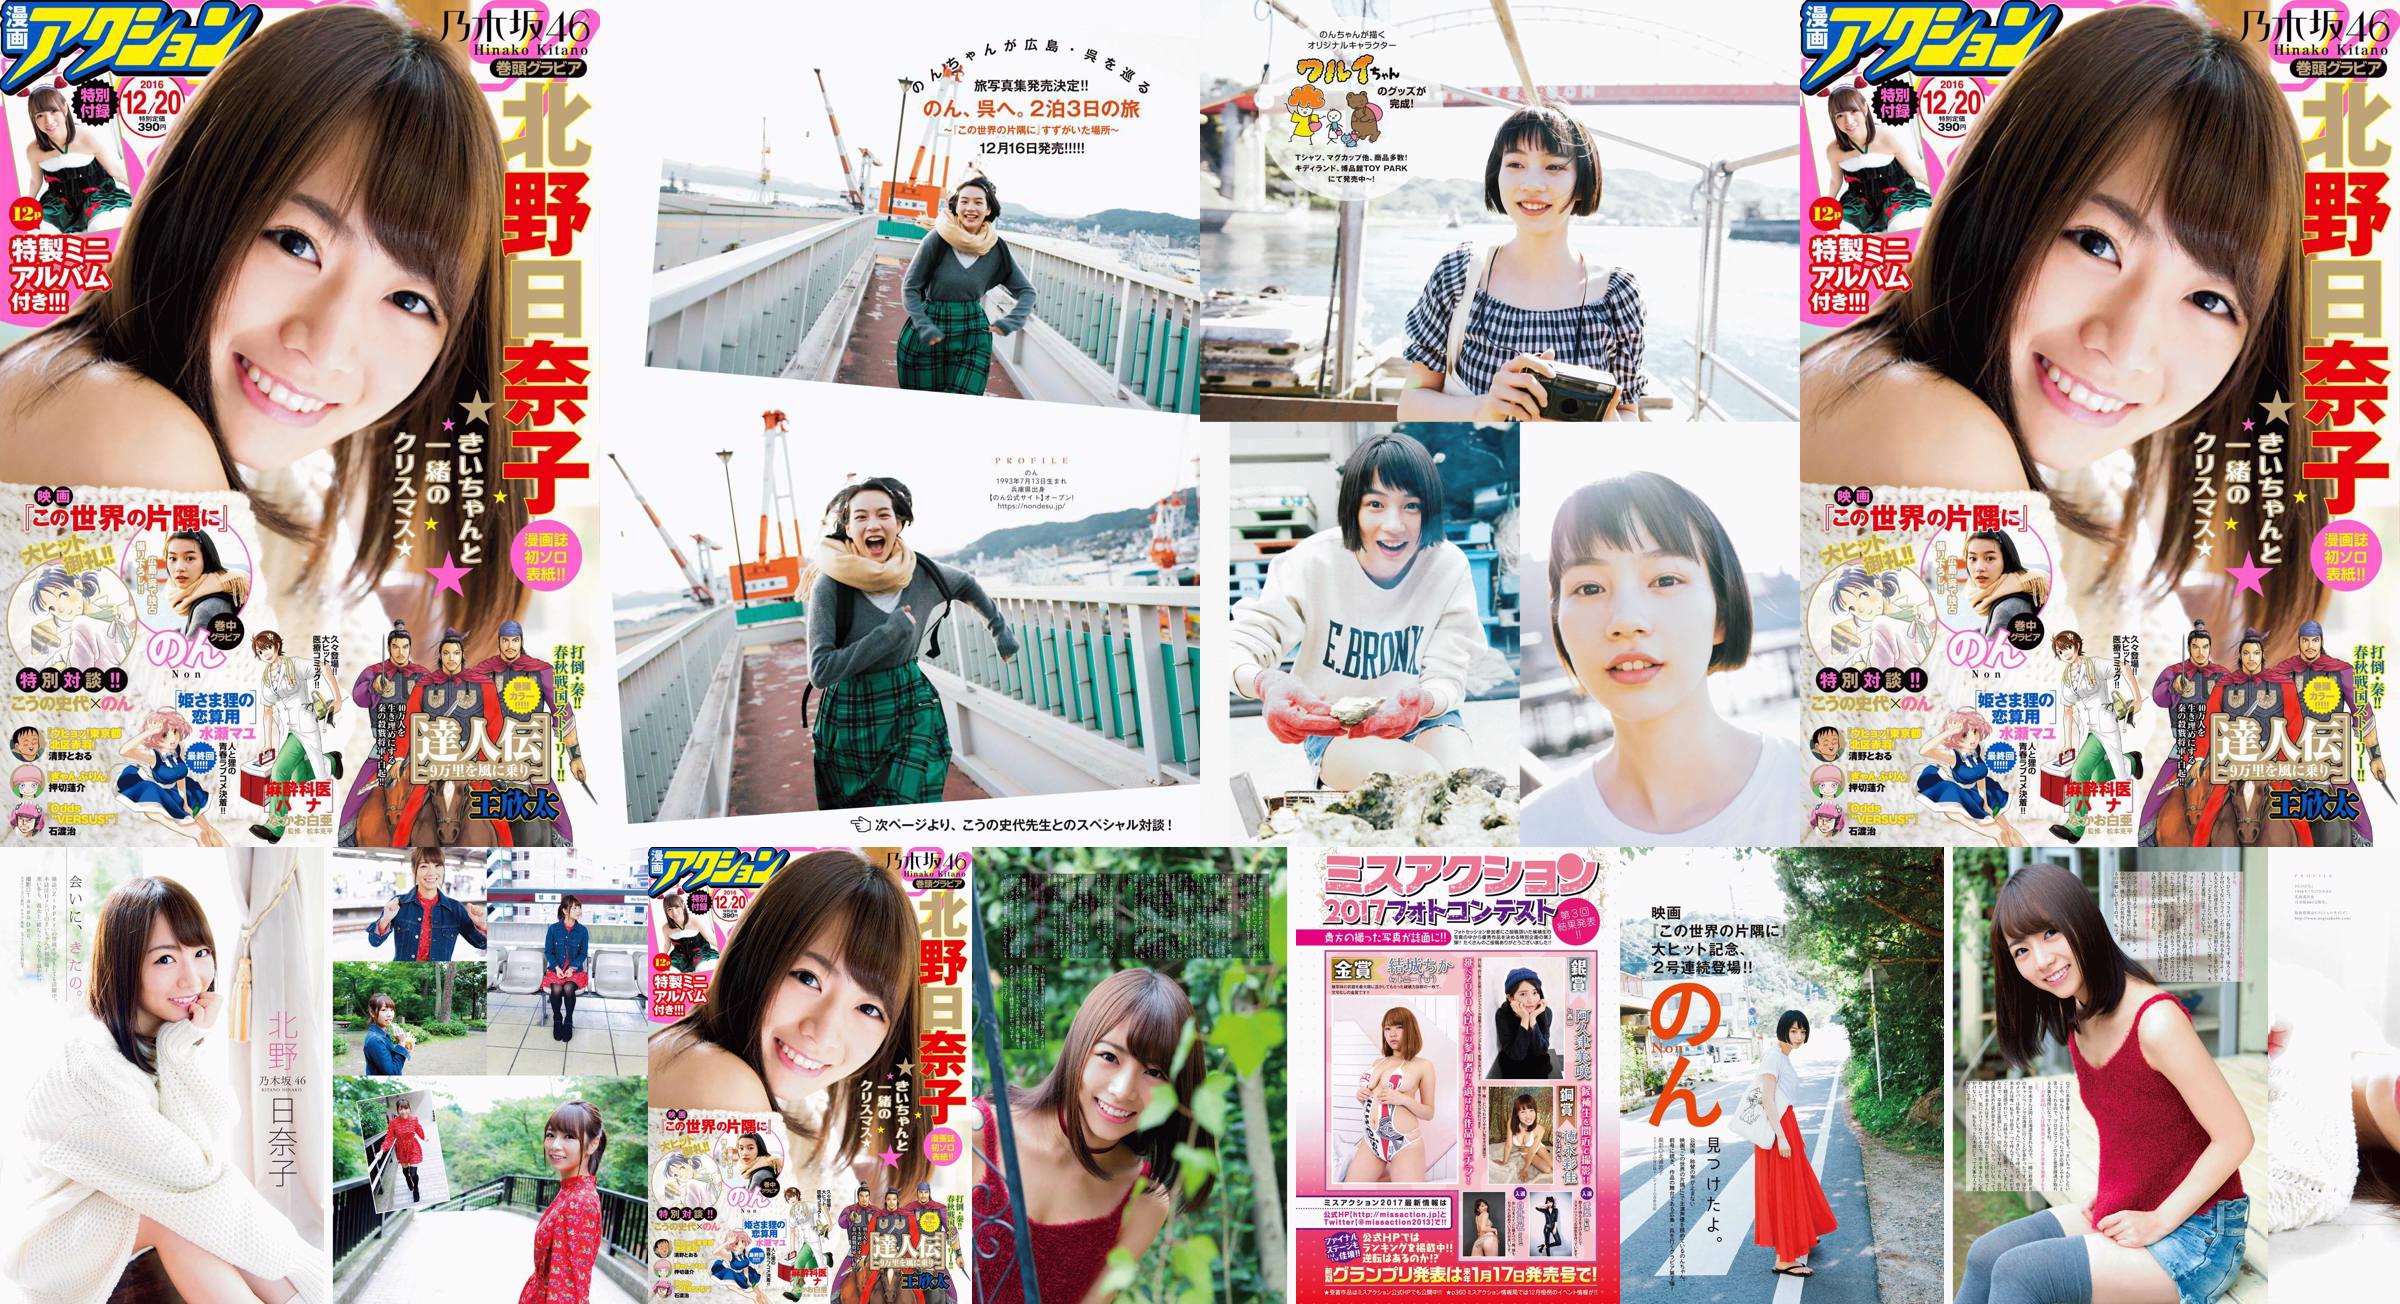 [Manga Action] Kitano Hinako のん 2016 No.24 Photo Magazine No.70240a Page 4